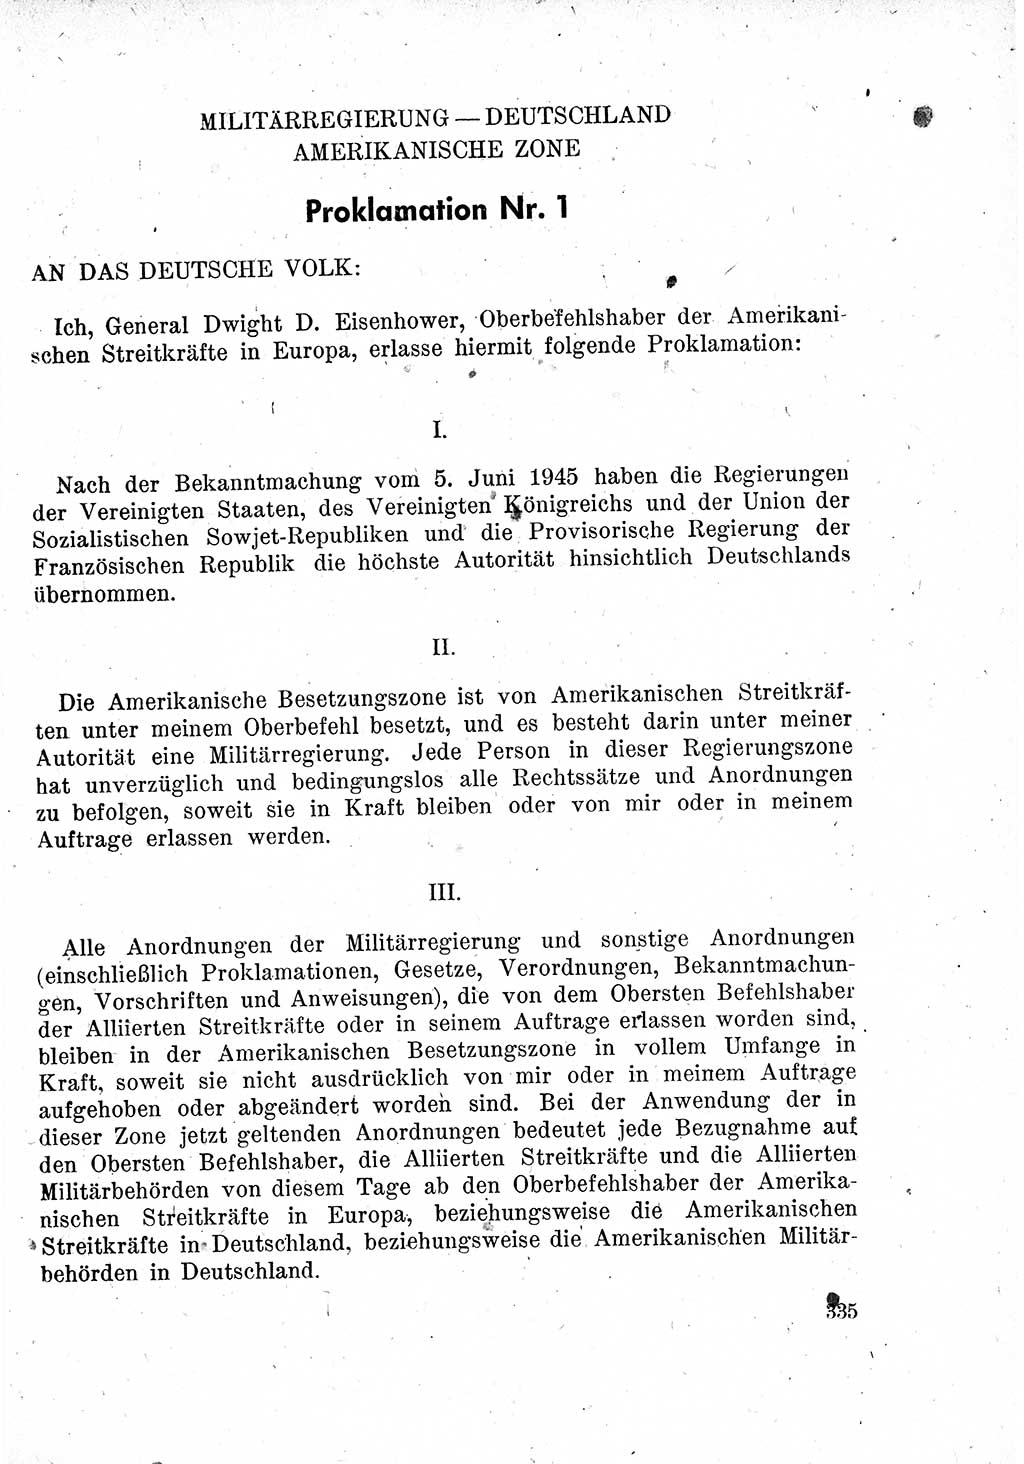 Das Recht der Besatzungsmacht (Deutschland), Proklamationen, Deklerationen, Verordnungen, Gesetze und Bekanntmachungen 1947, Seite 335 (R. Bes. Dtl. 1947, S. 335)